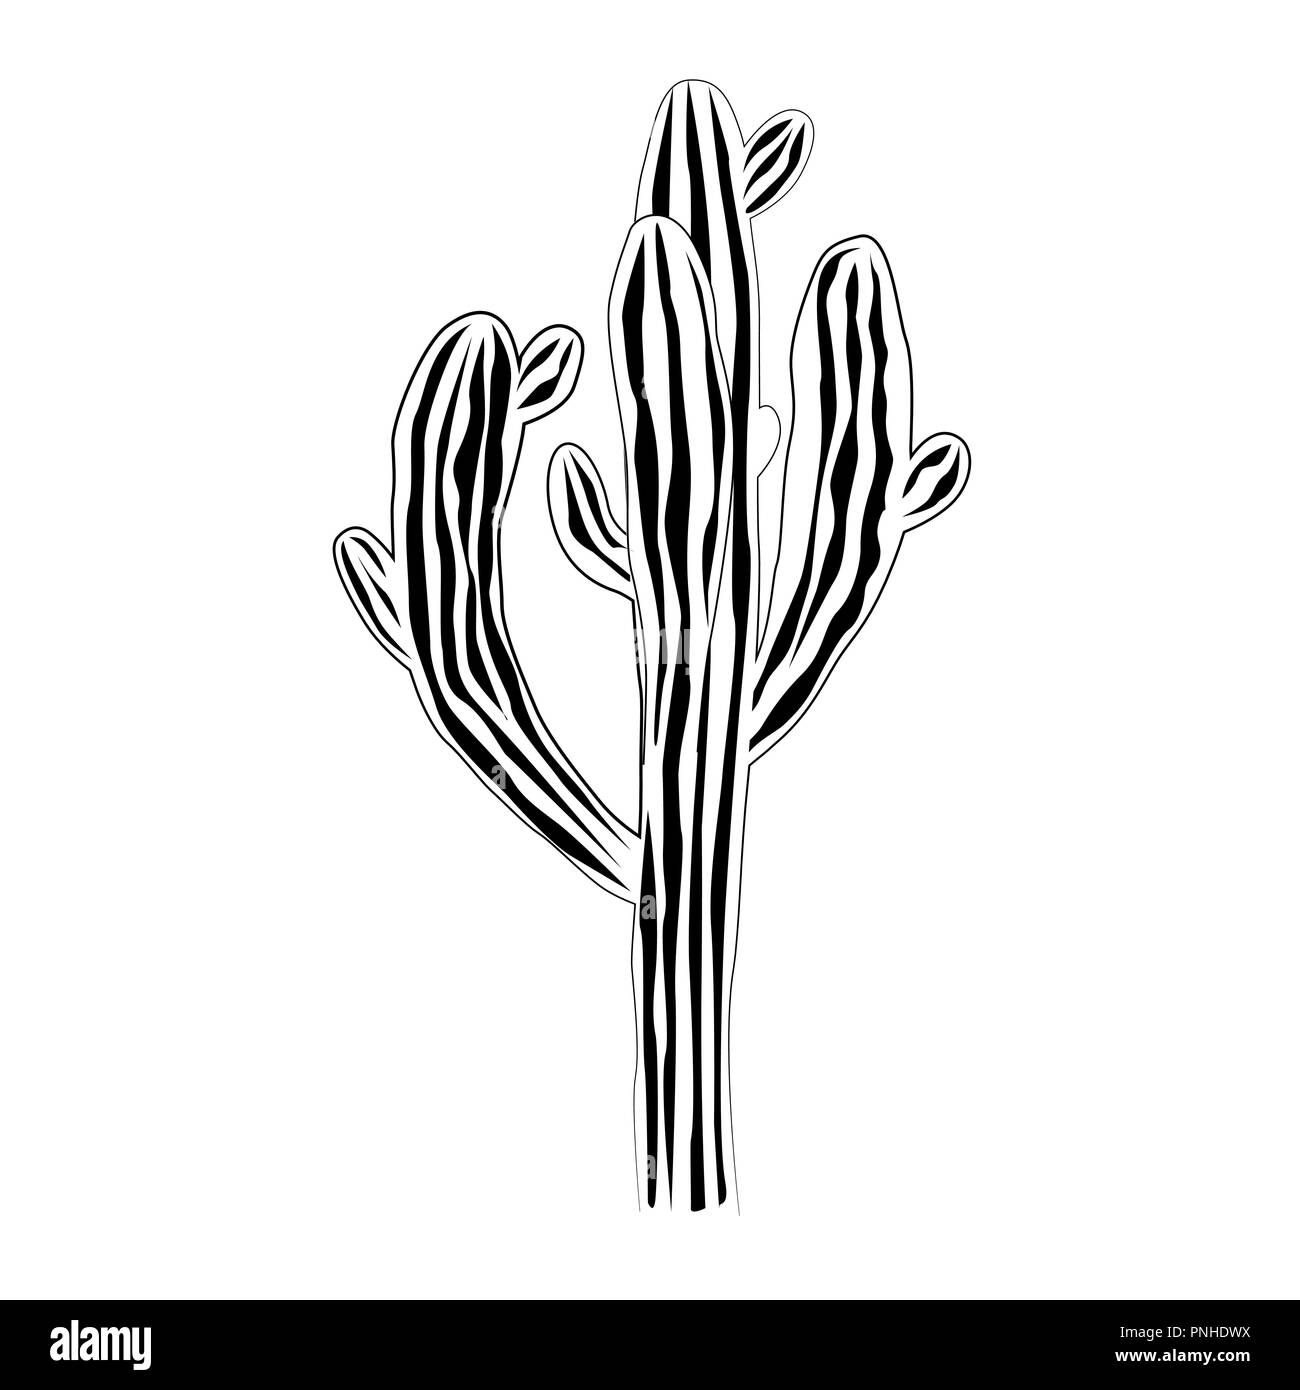 Un vieux et très grandes saguaro cactus isolé sur fond blanc, Carnegiea gigantea vector illustration. Graphique noir et blanc Illustration de Vecteur